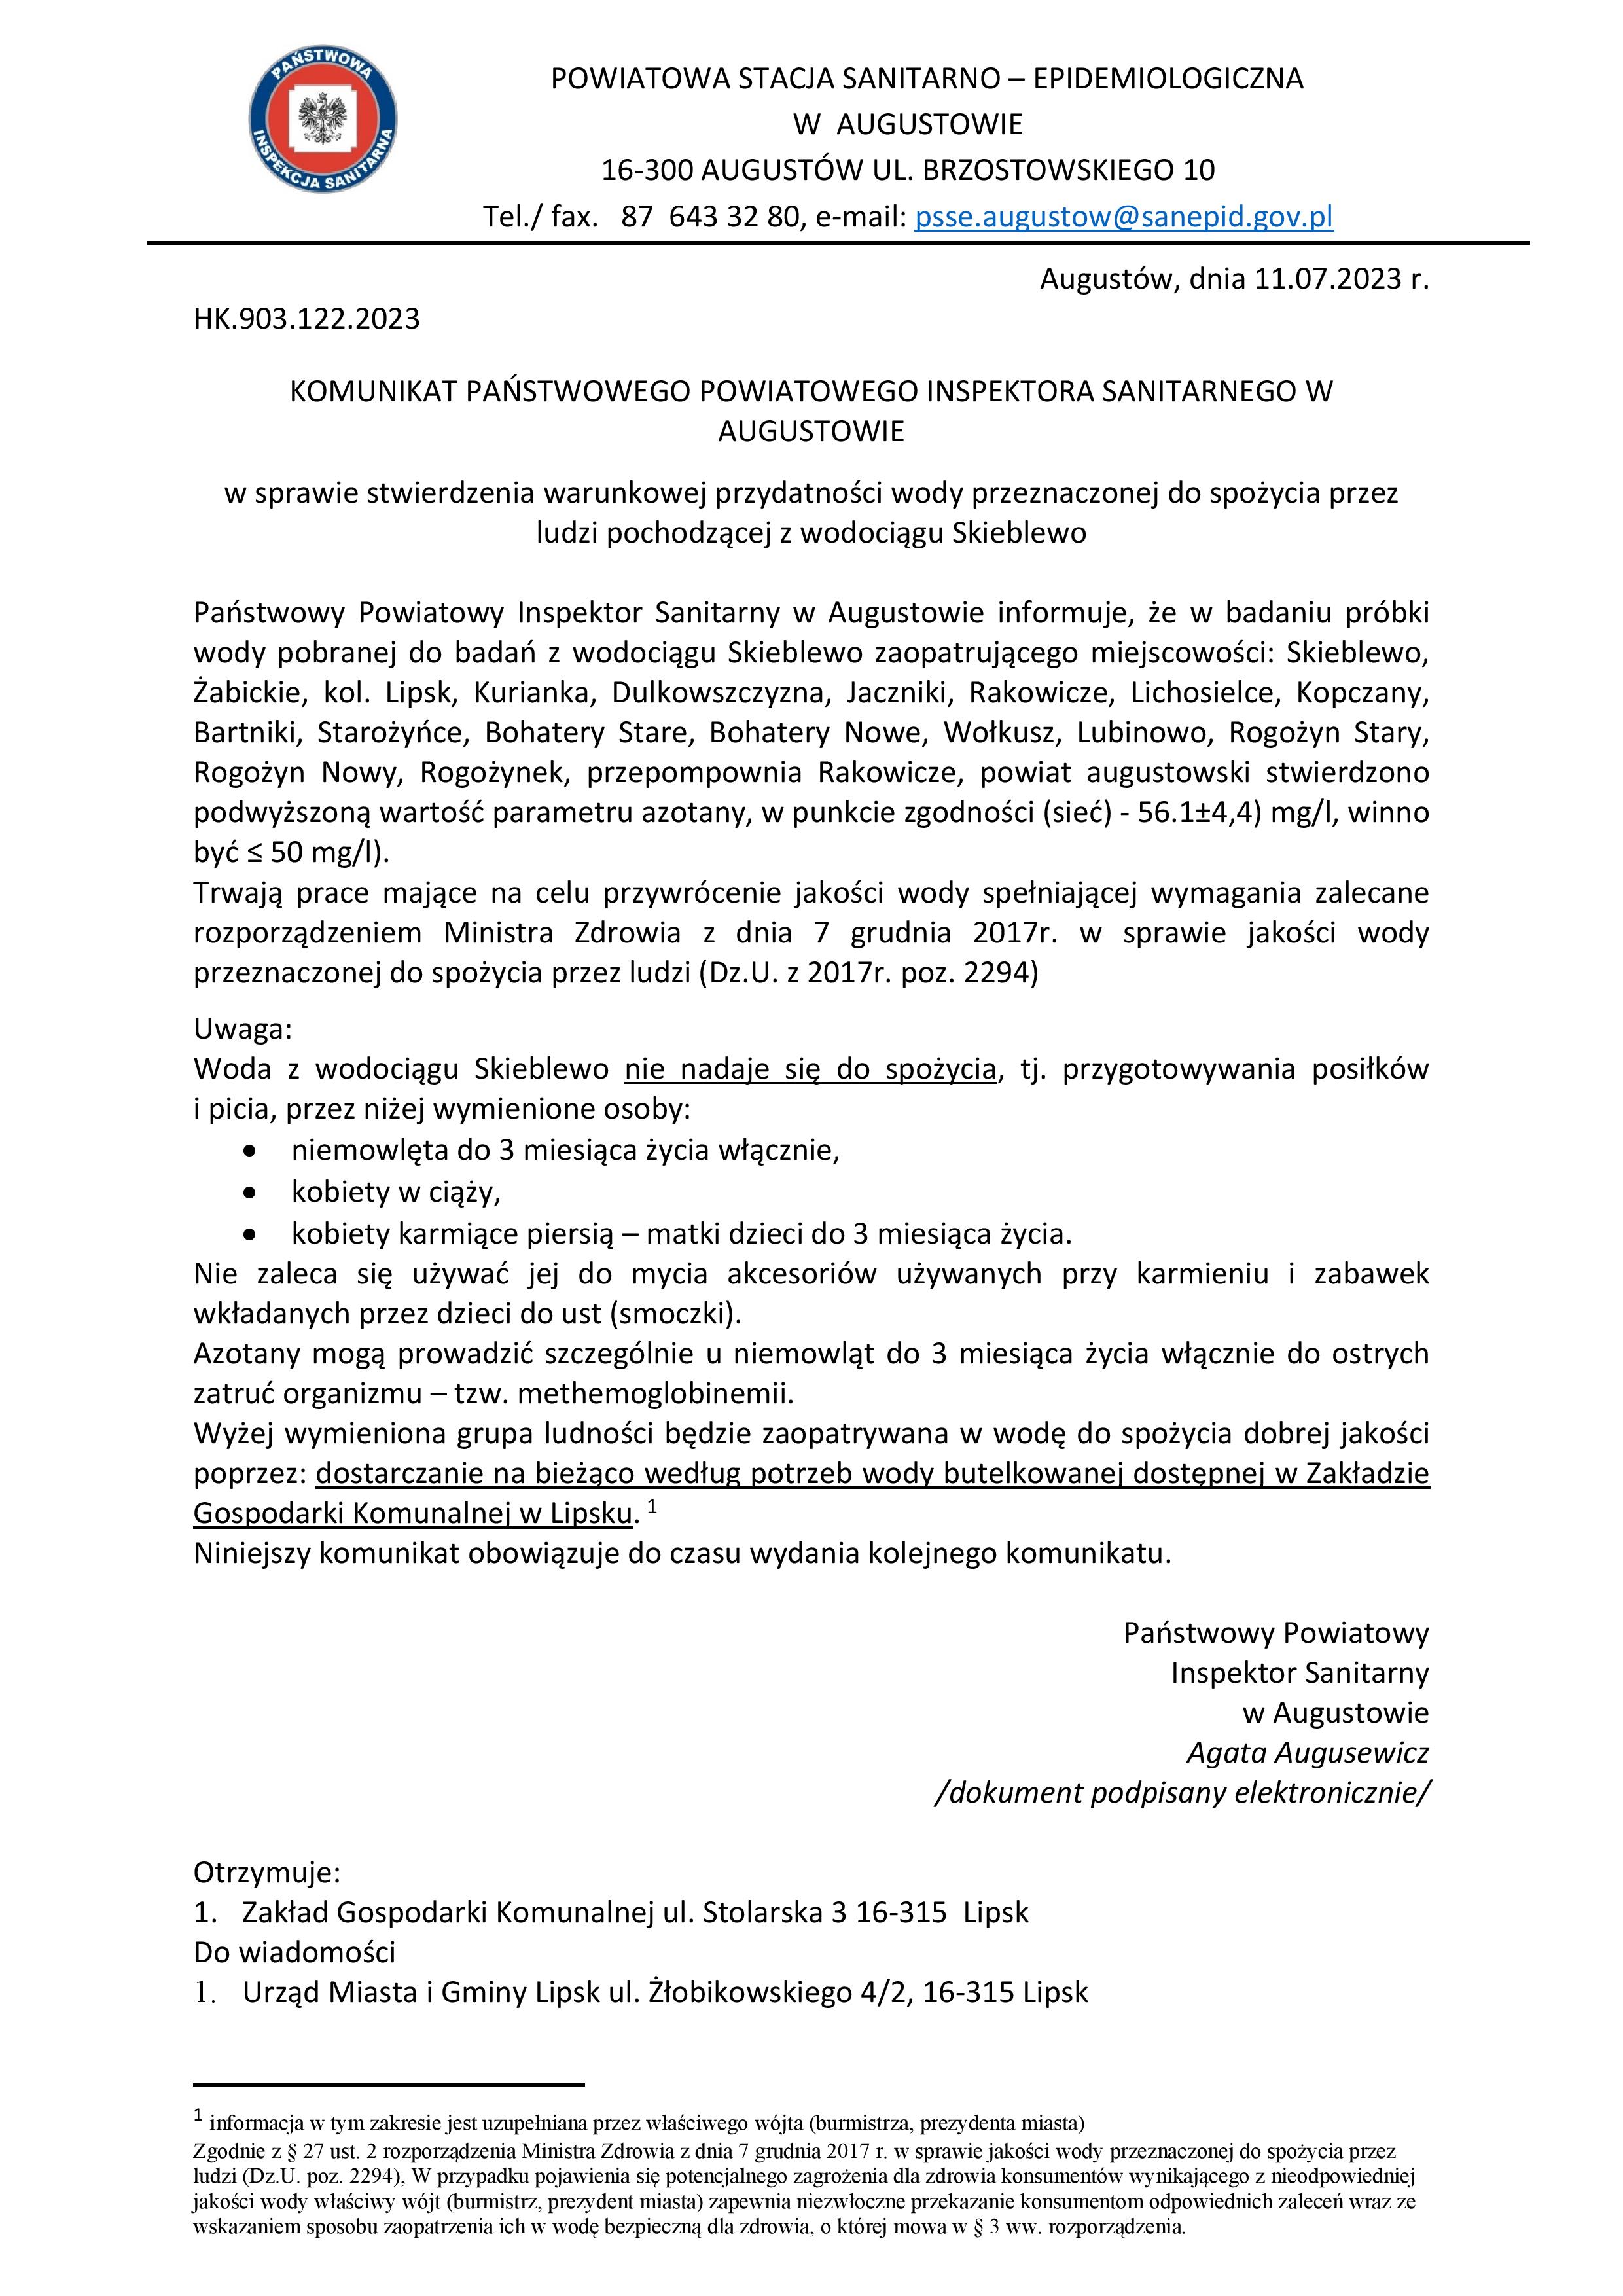 Komunikat z dn. 11.07.2023r. woda warunkowa Wodociąg Skieblewo azotany page 001